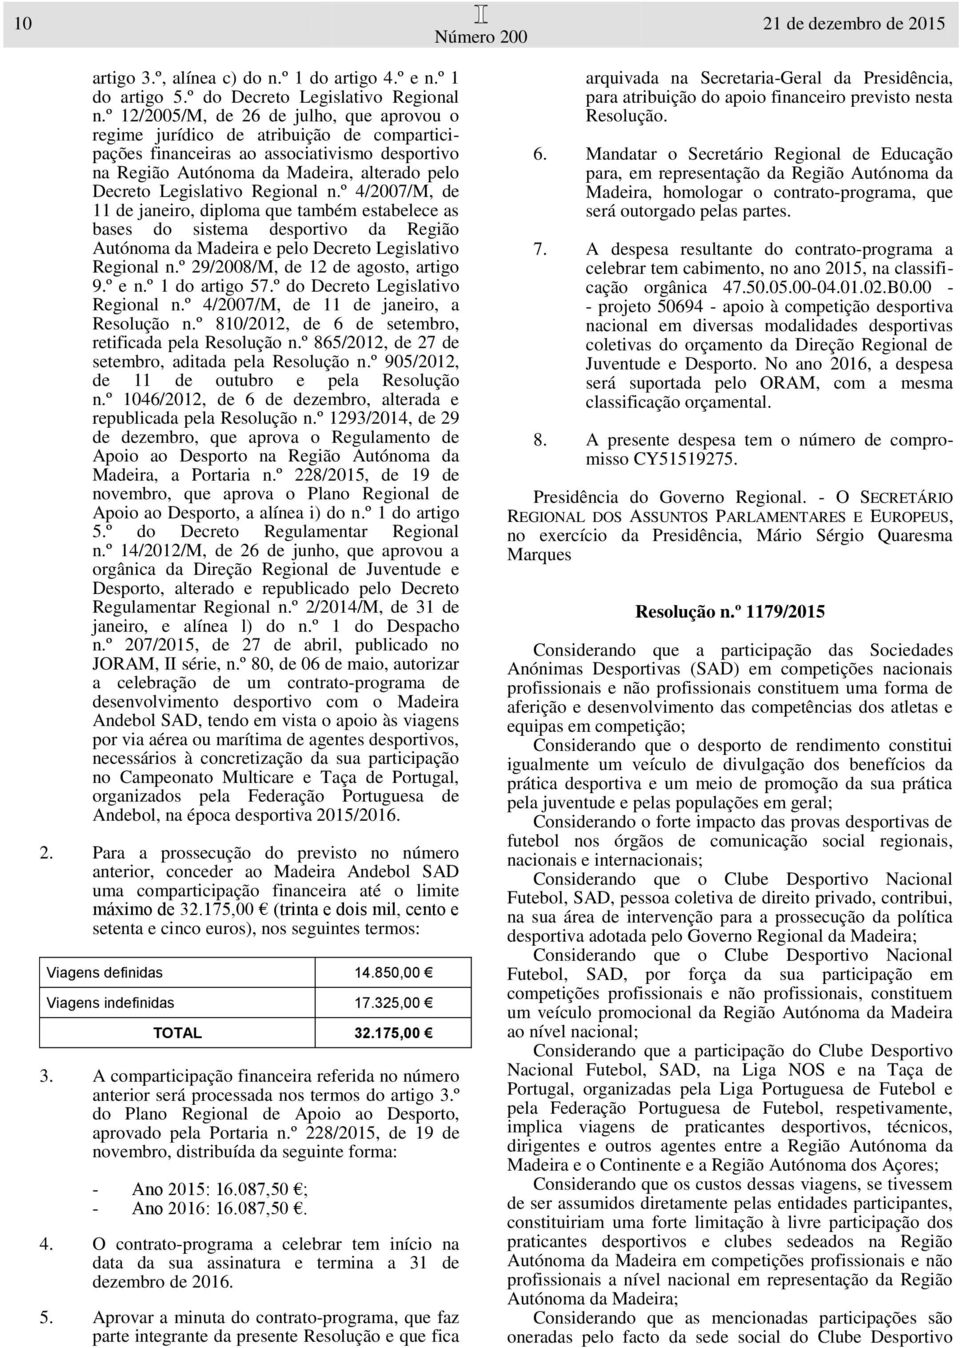 Regional n.º 4/2007/M, de 11 de janeiro, diploma que também estabelece as bases do sistema desportivo da Região Autónoma da Madeira e pelo Decreto Legislativo Regional n.